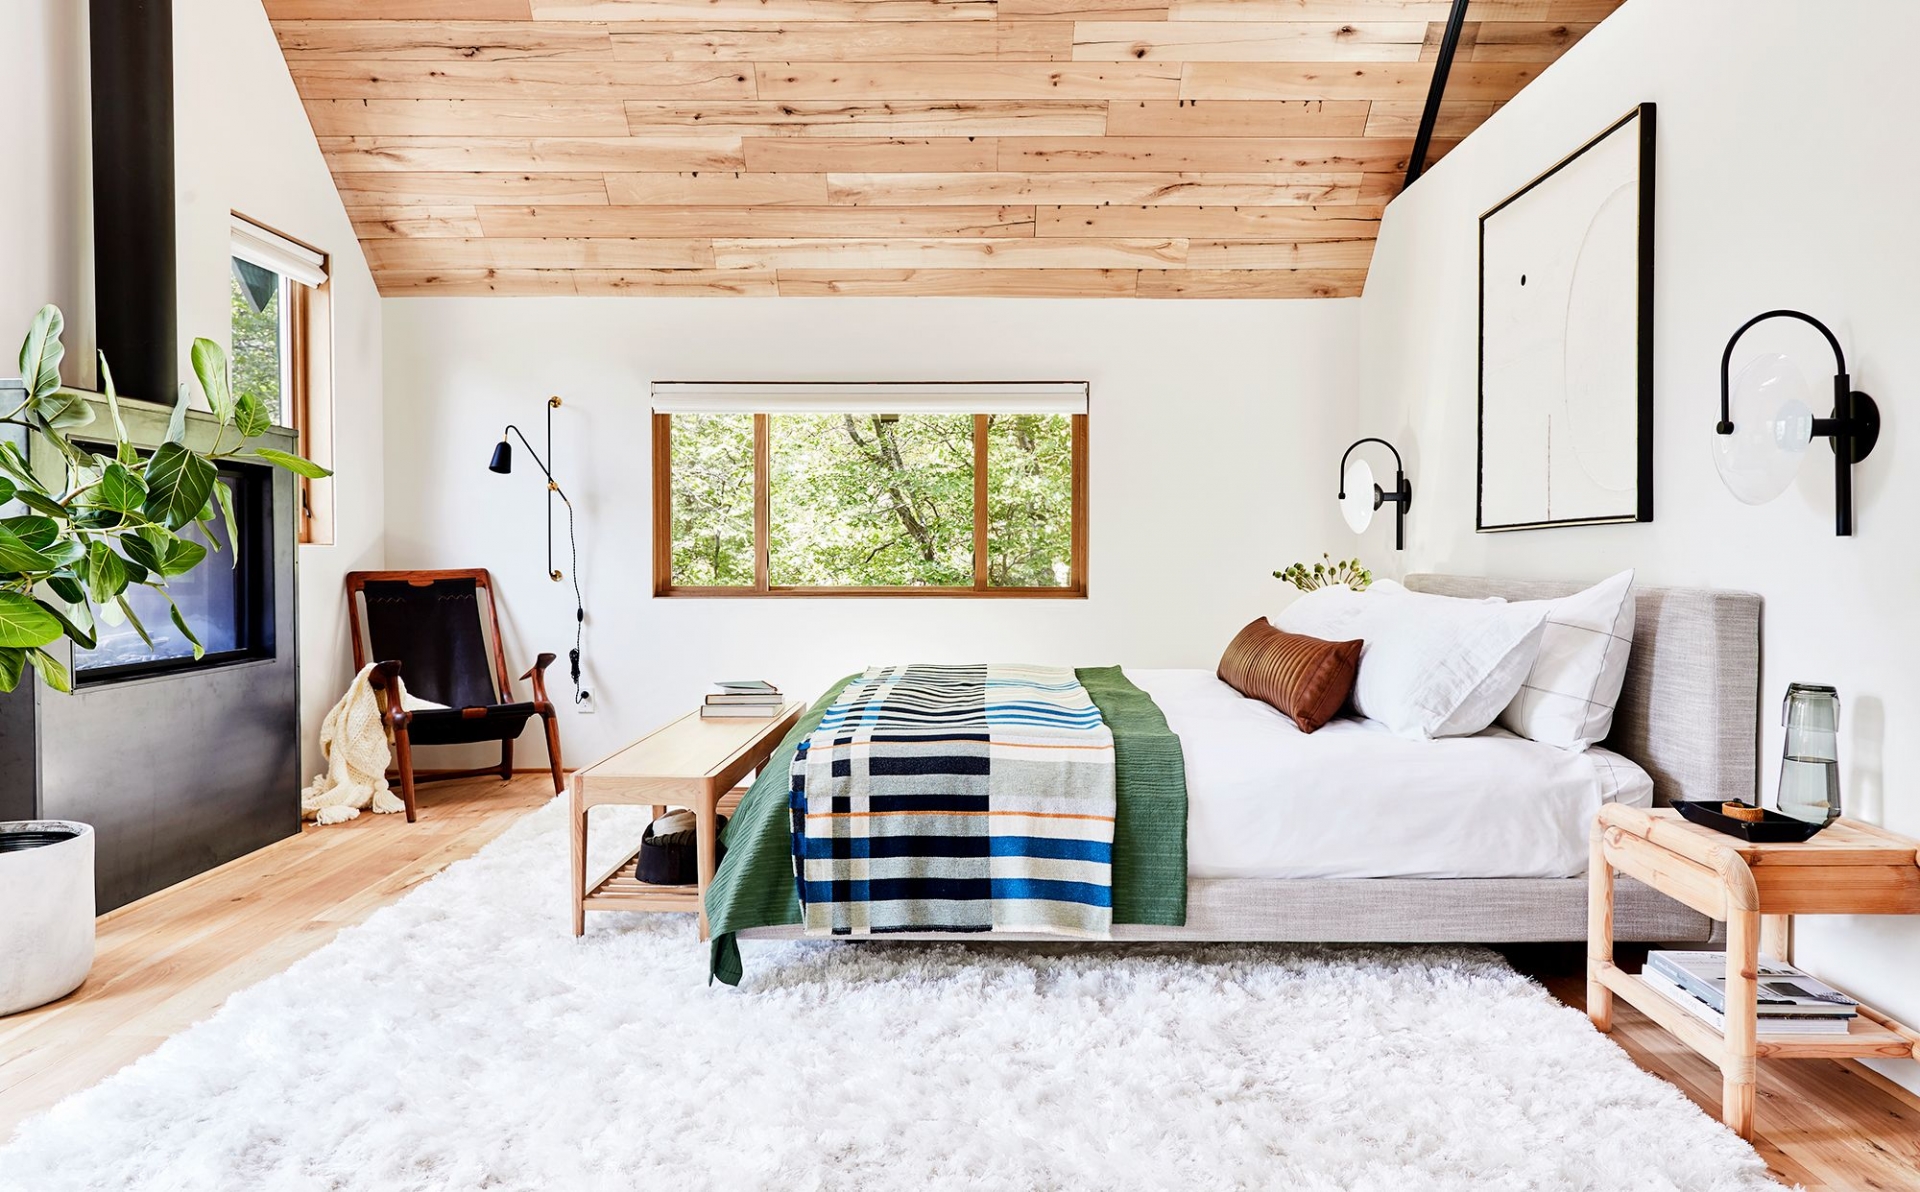 Các nhà tâm lý học tin rằng, trang trí nội thất bằng vật liệu gỗ tự nhiên có khả năng điều chỉnh tâm trạng tích cực, thúc đẩy giấc ngủ ngon.